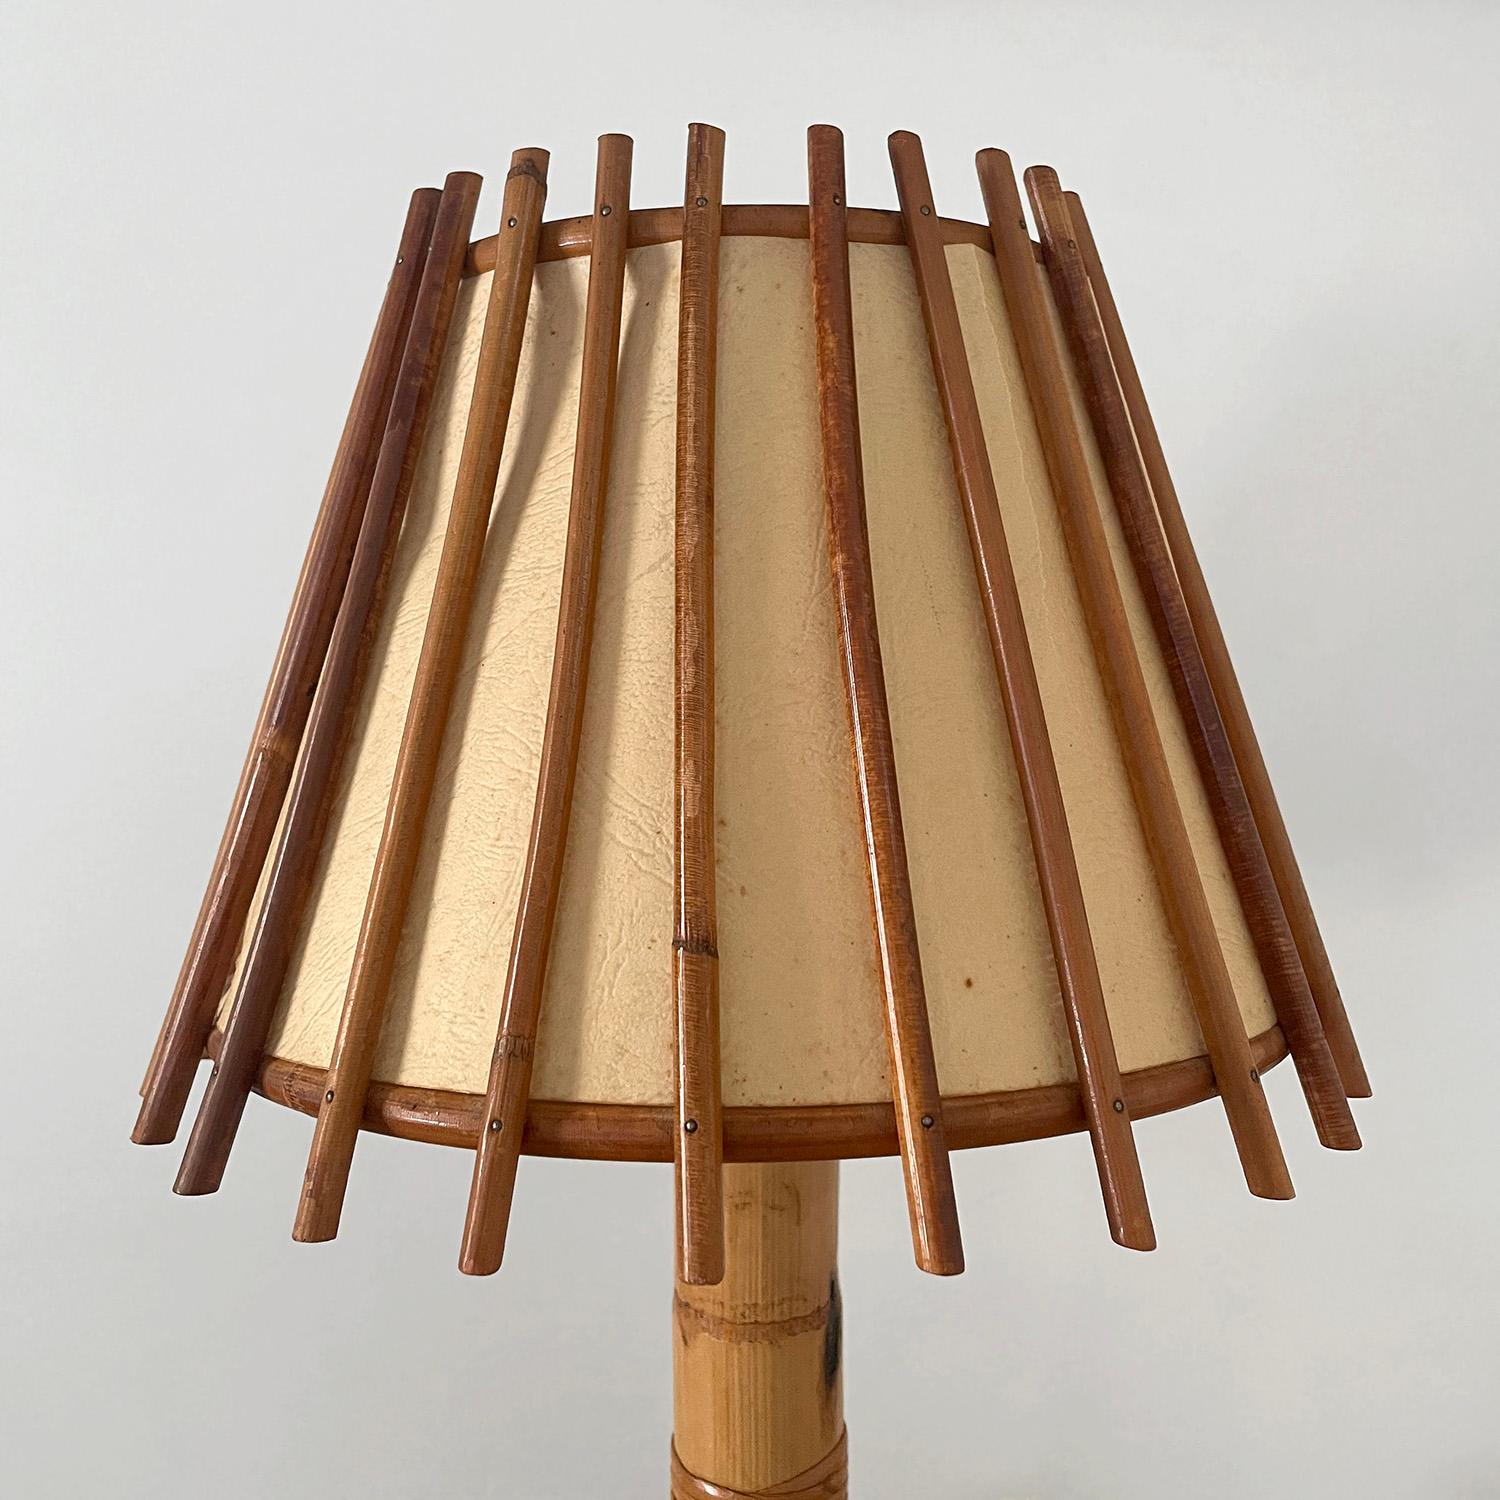 Lampe de table en bambou et rotin Louis Sognot
France, vers 1960
Composition et toucher organiques 
Base en bambou sculpté 
L'abat-jour est constitué de roseaux de rotin verticaux avec des rivets cloutés.
Les cartons d'ombrage d'origine présentent